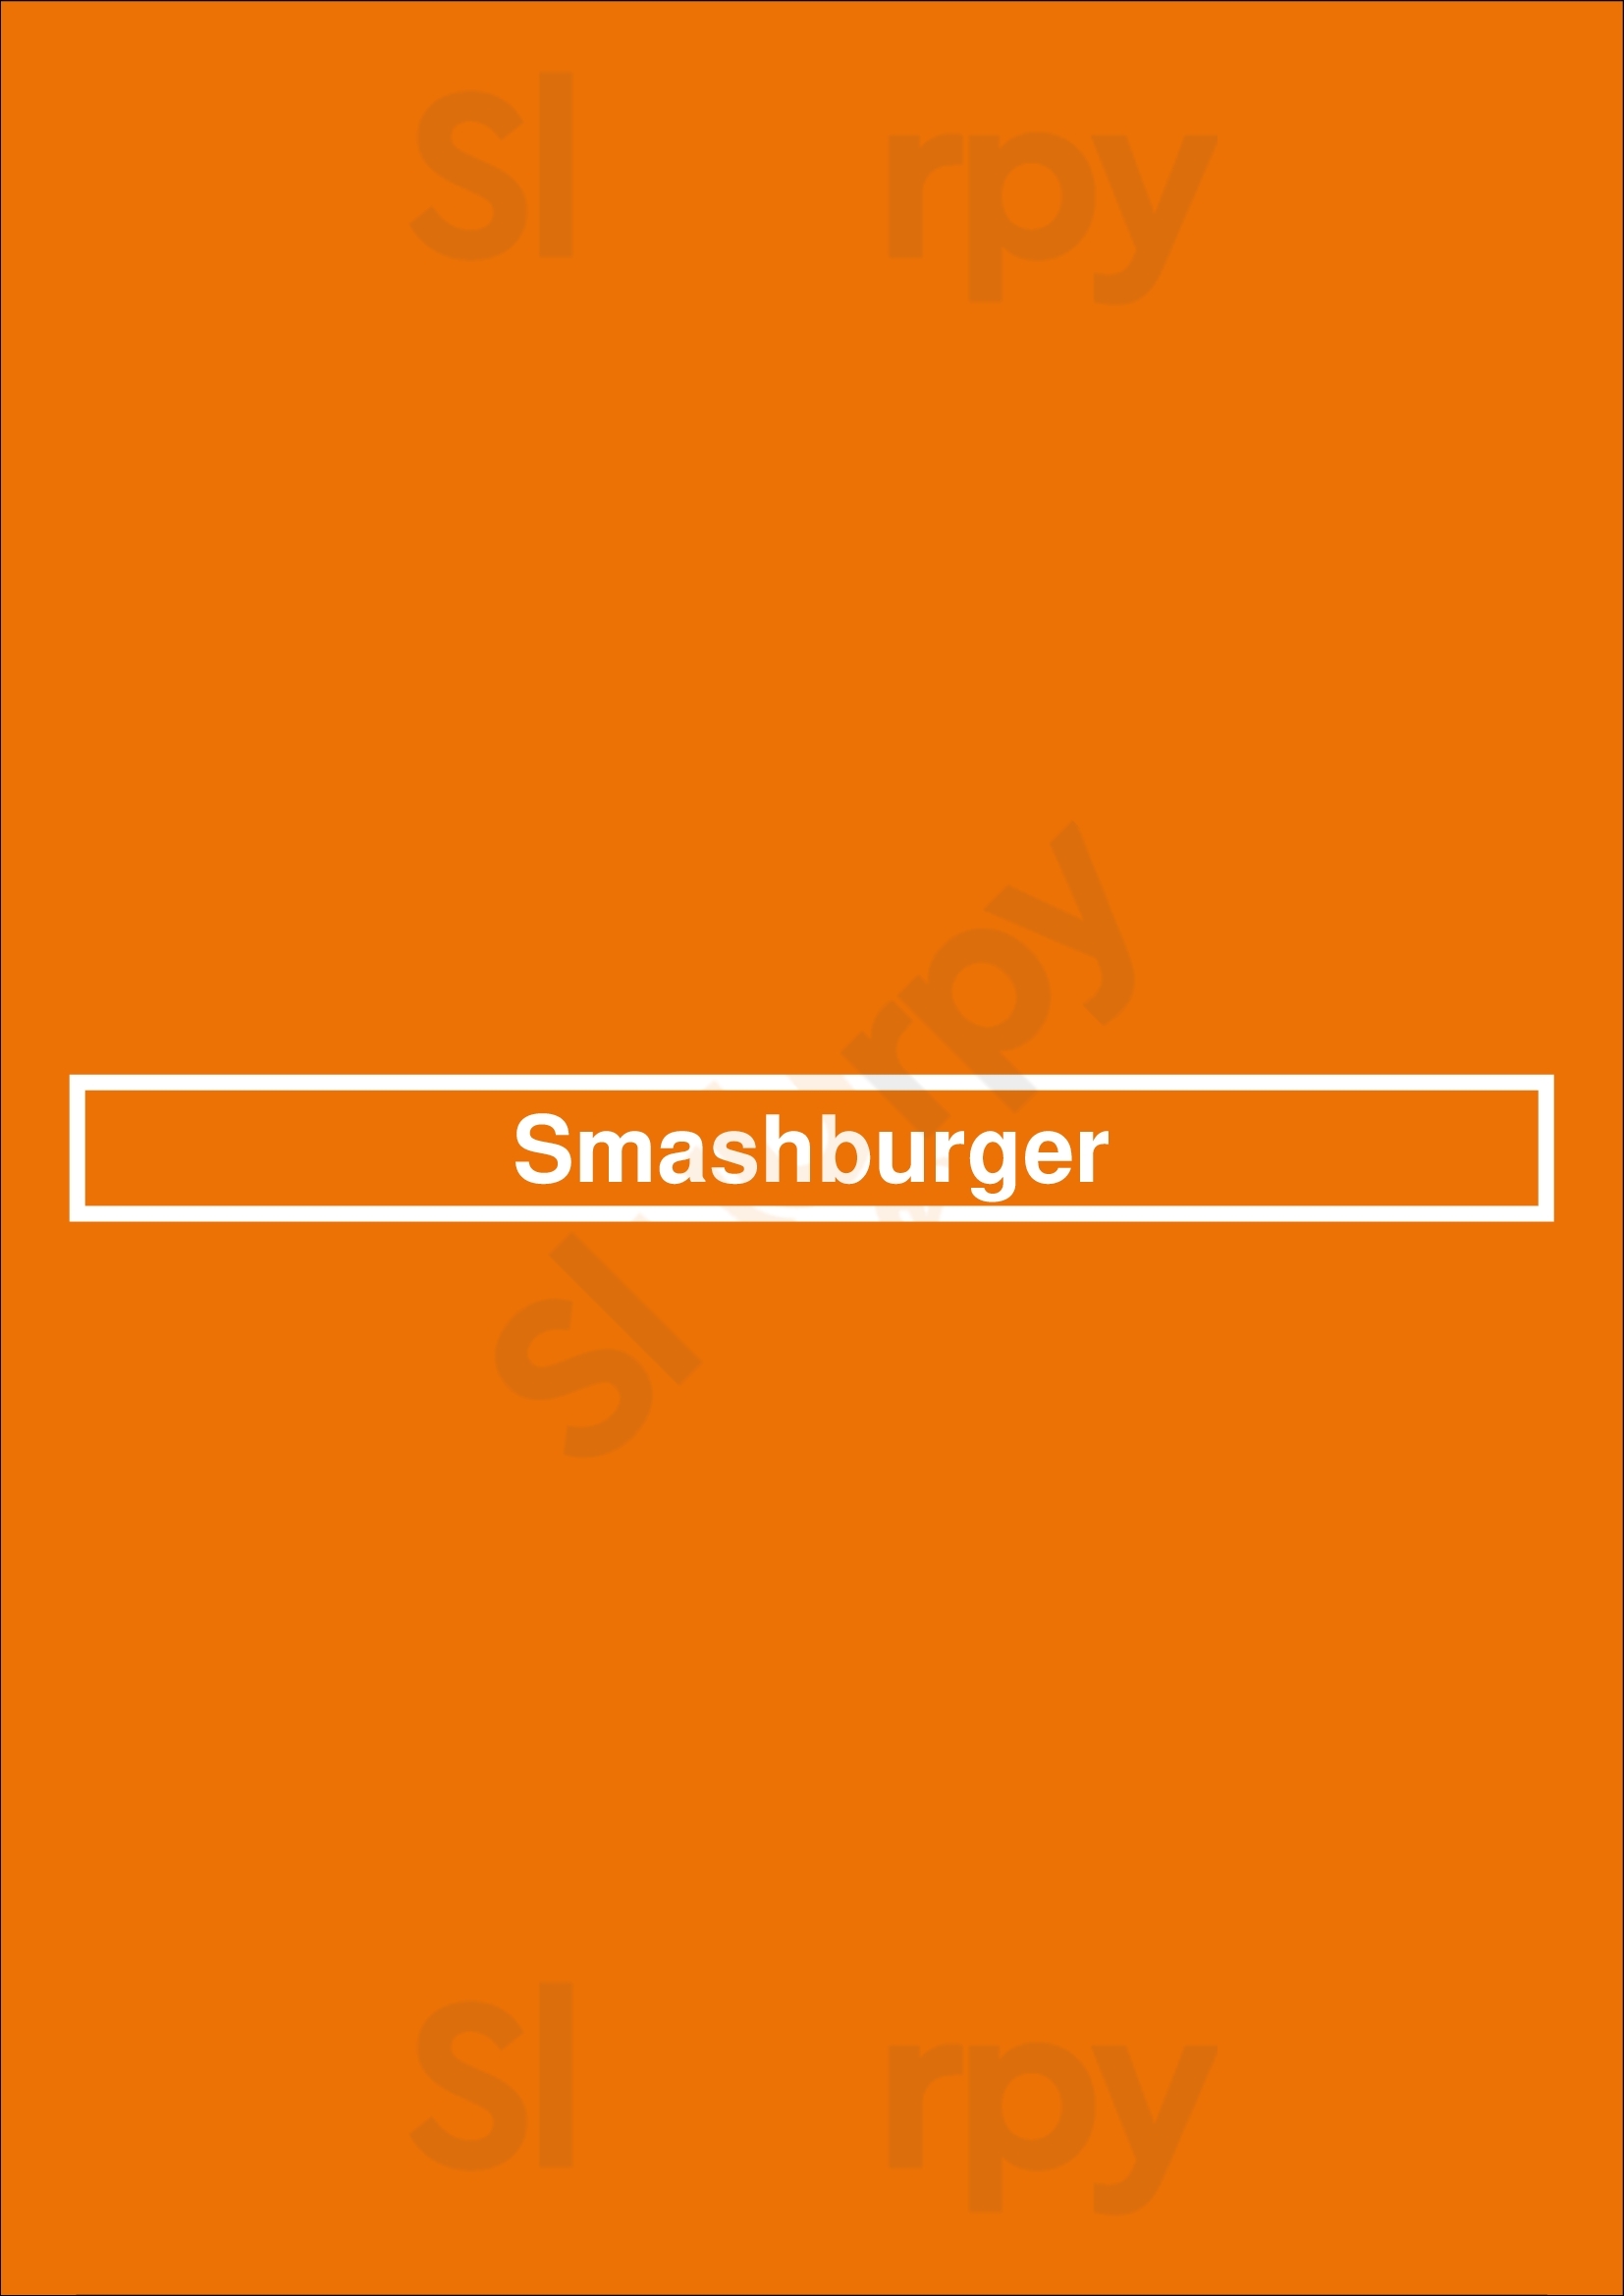 Smashburger Denver Menu - 1